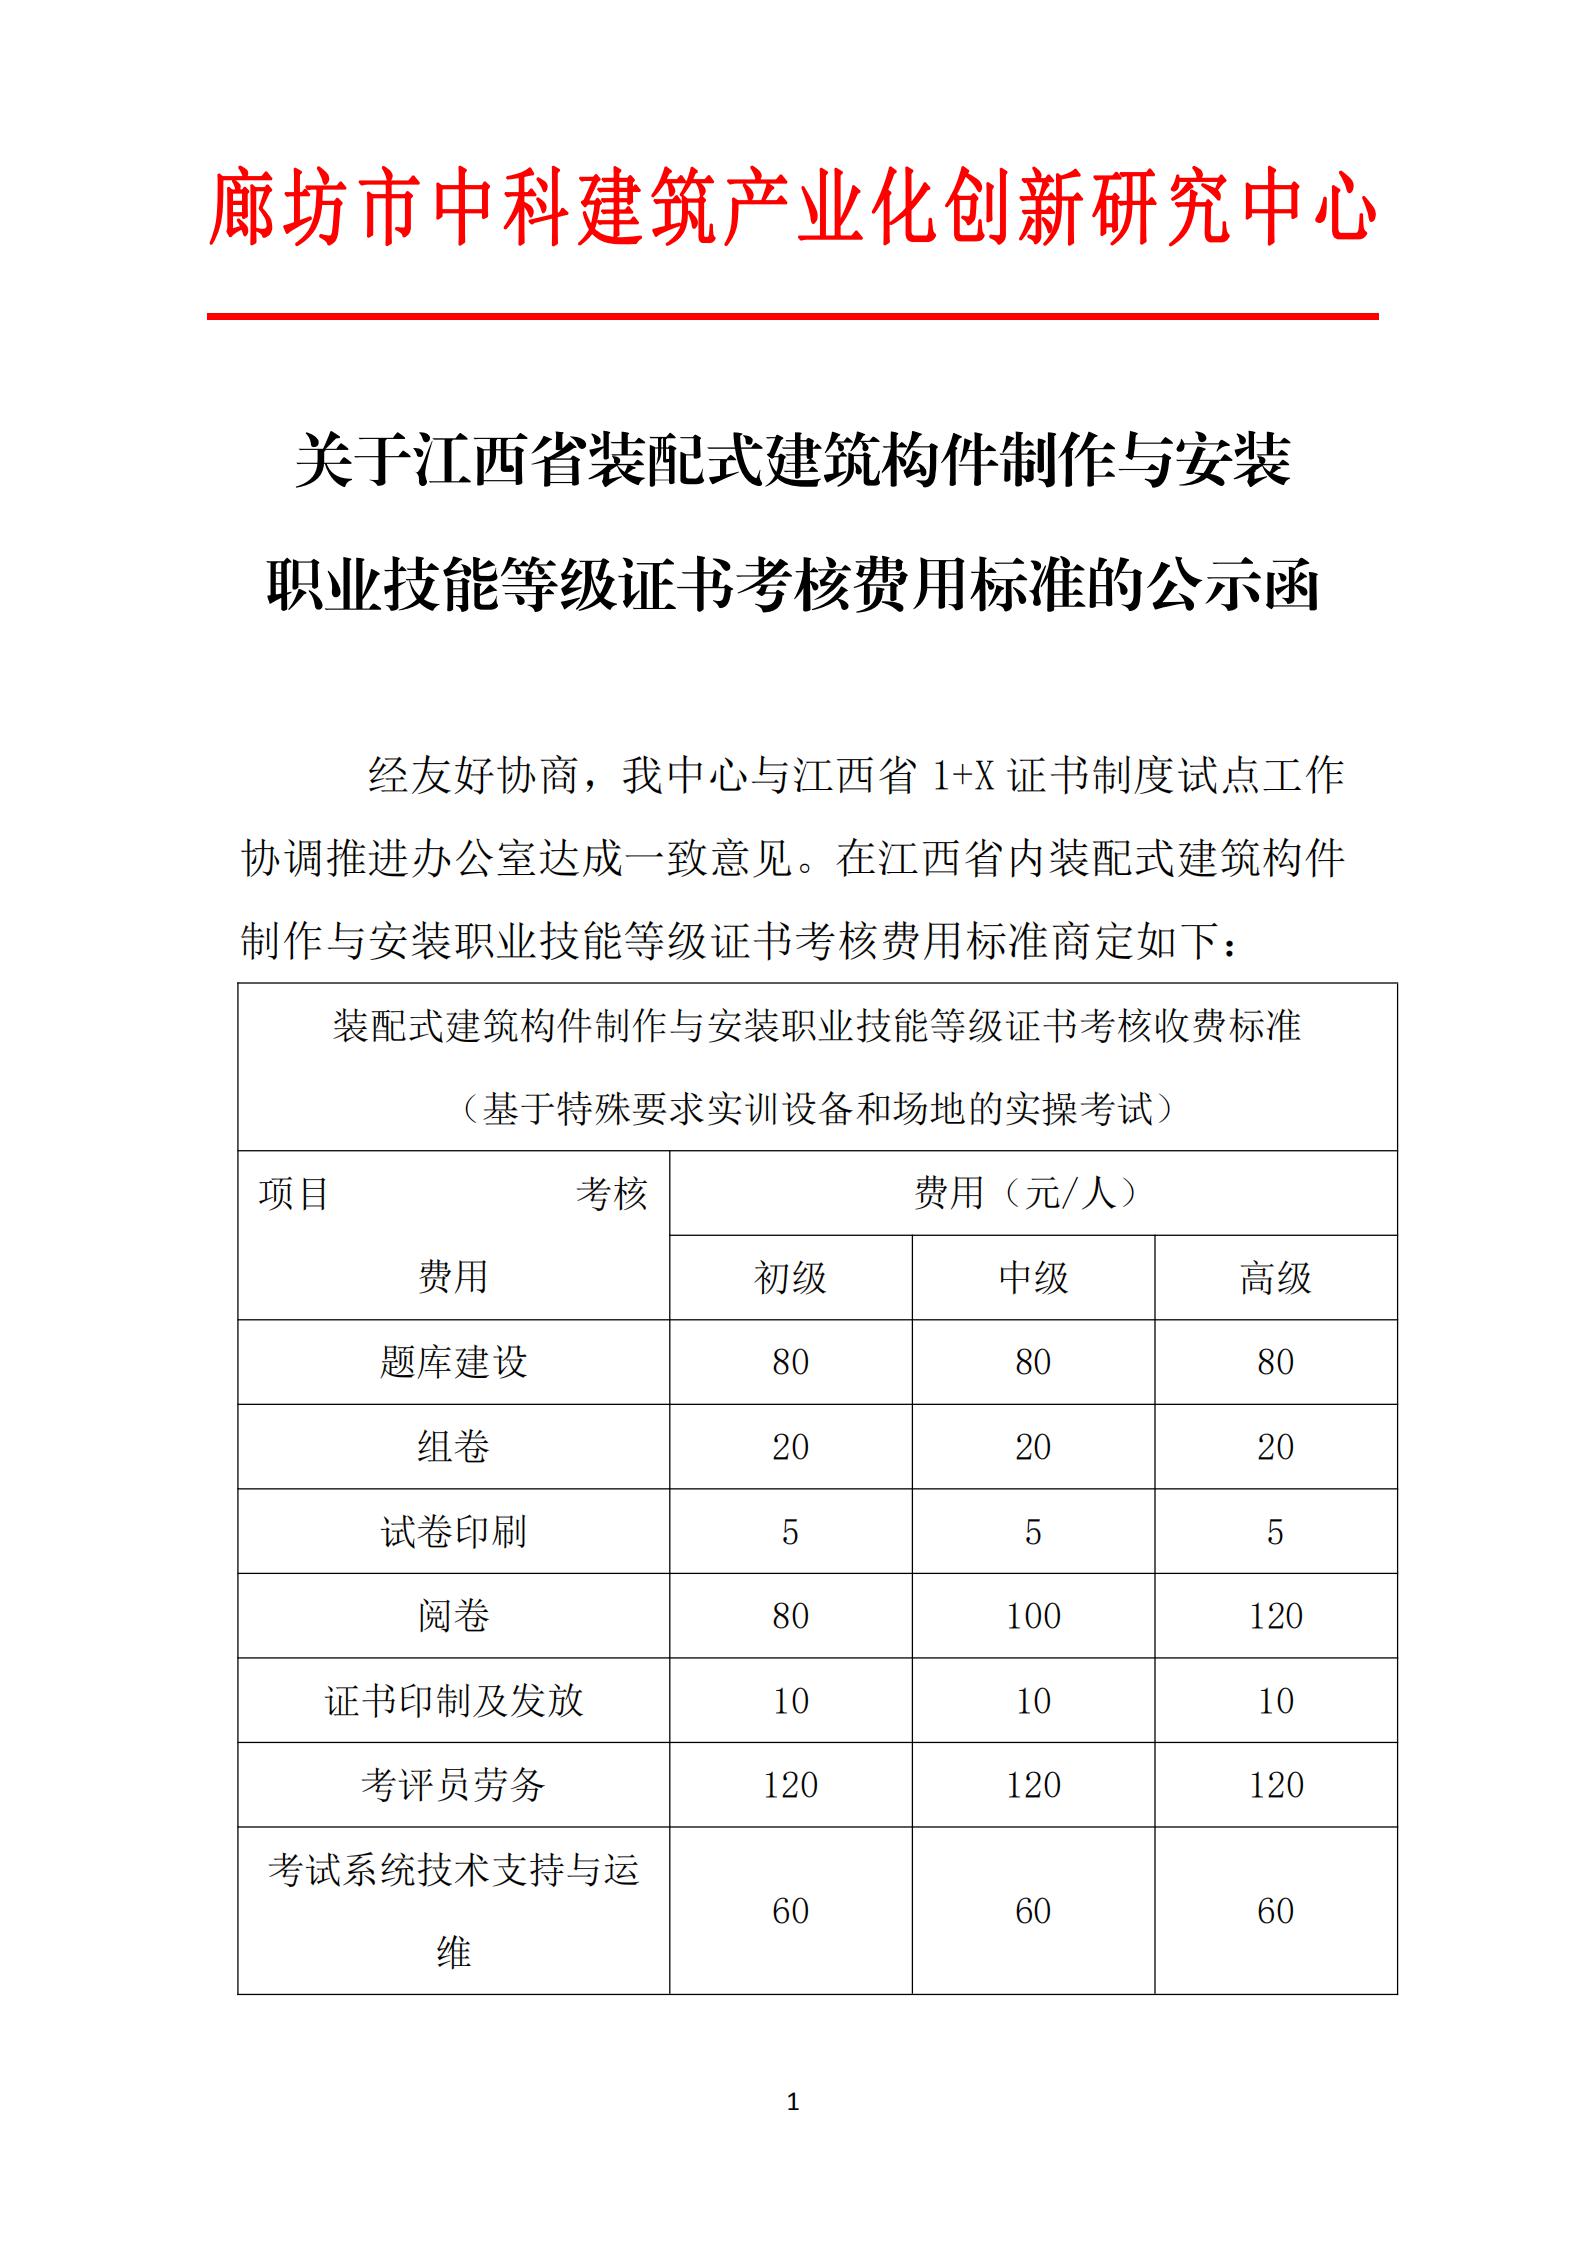 关于江西省装配式建筑构件制作与安装职业技能等级证书考核费用标准的公示函(图1)